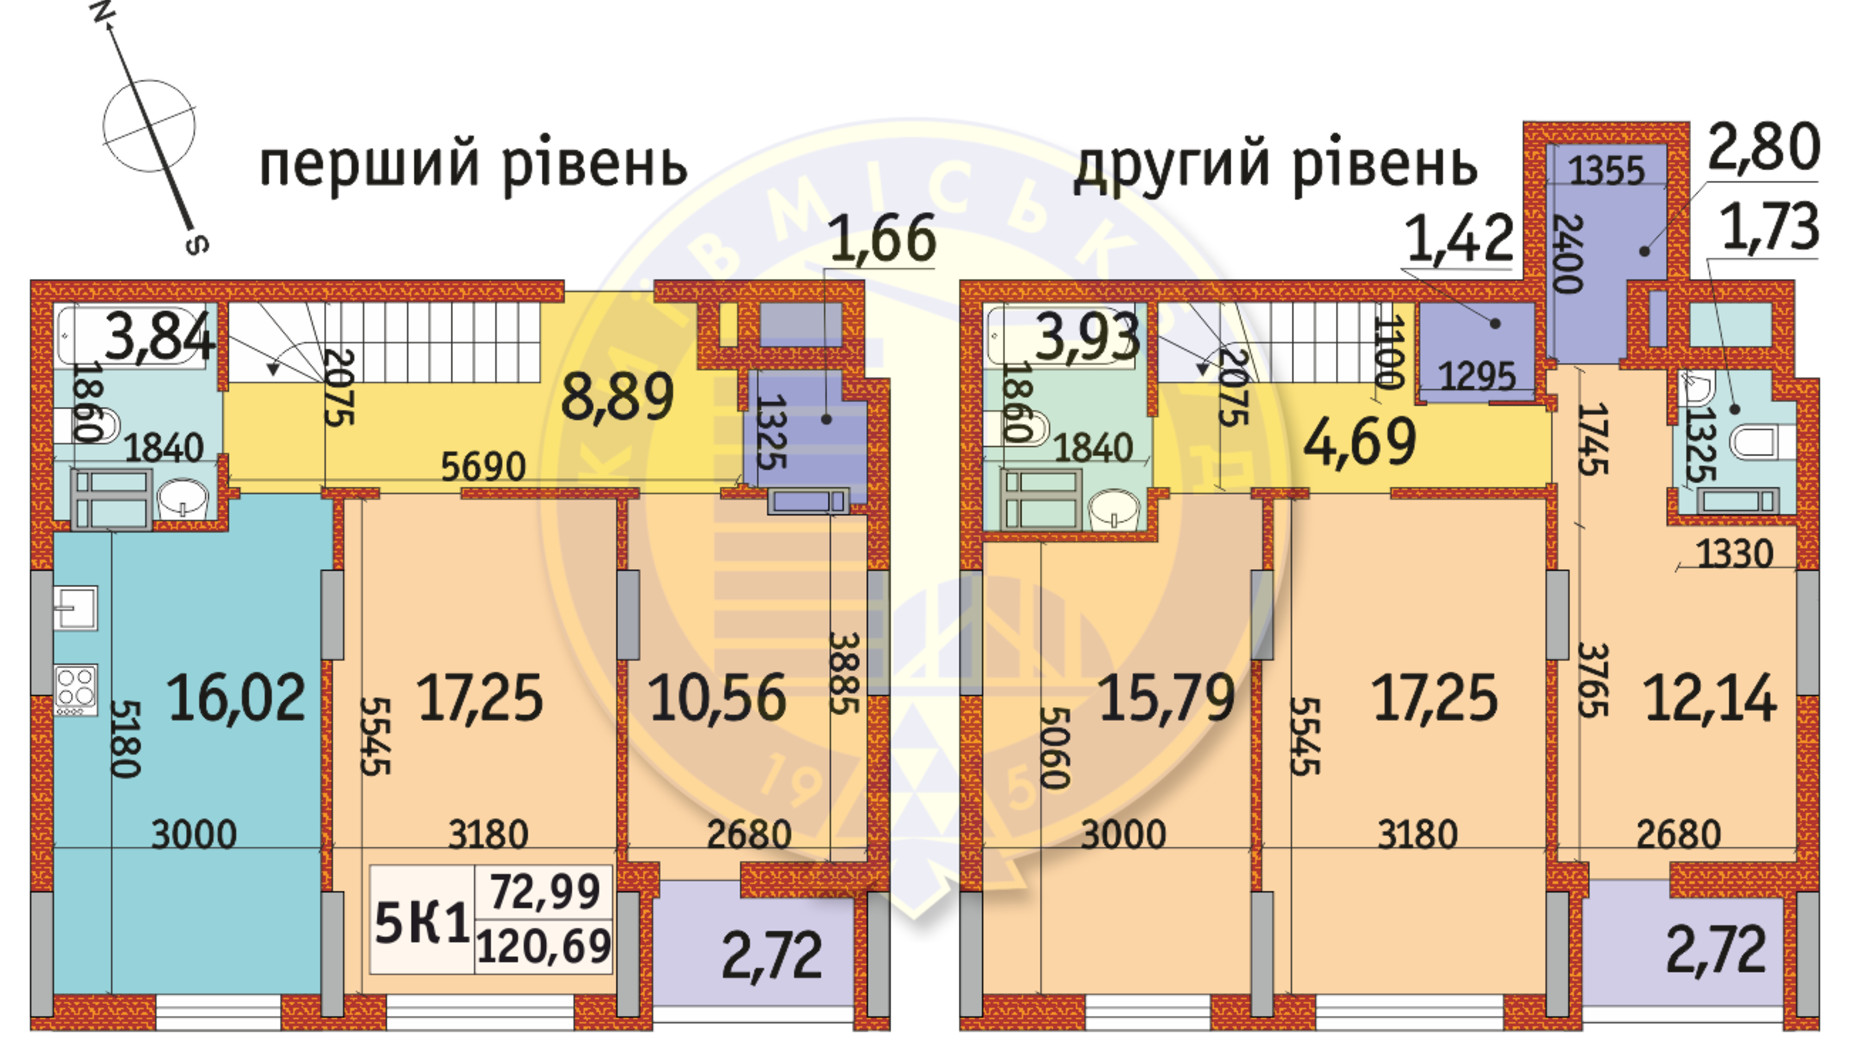 Планировка много­уровневой квартиры в ЖК Отрада 120.69 м², фото 146643